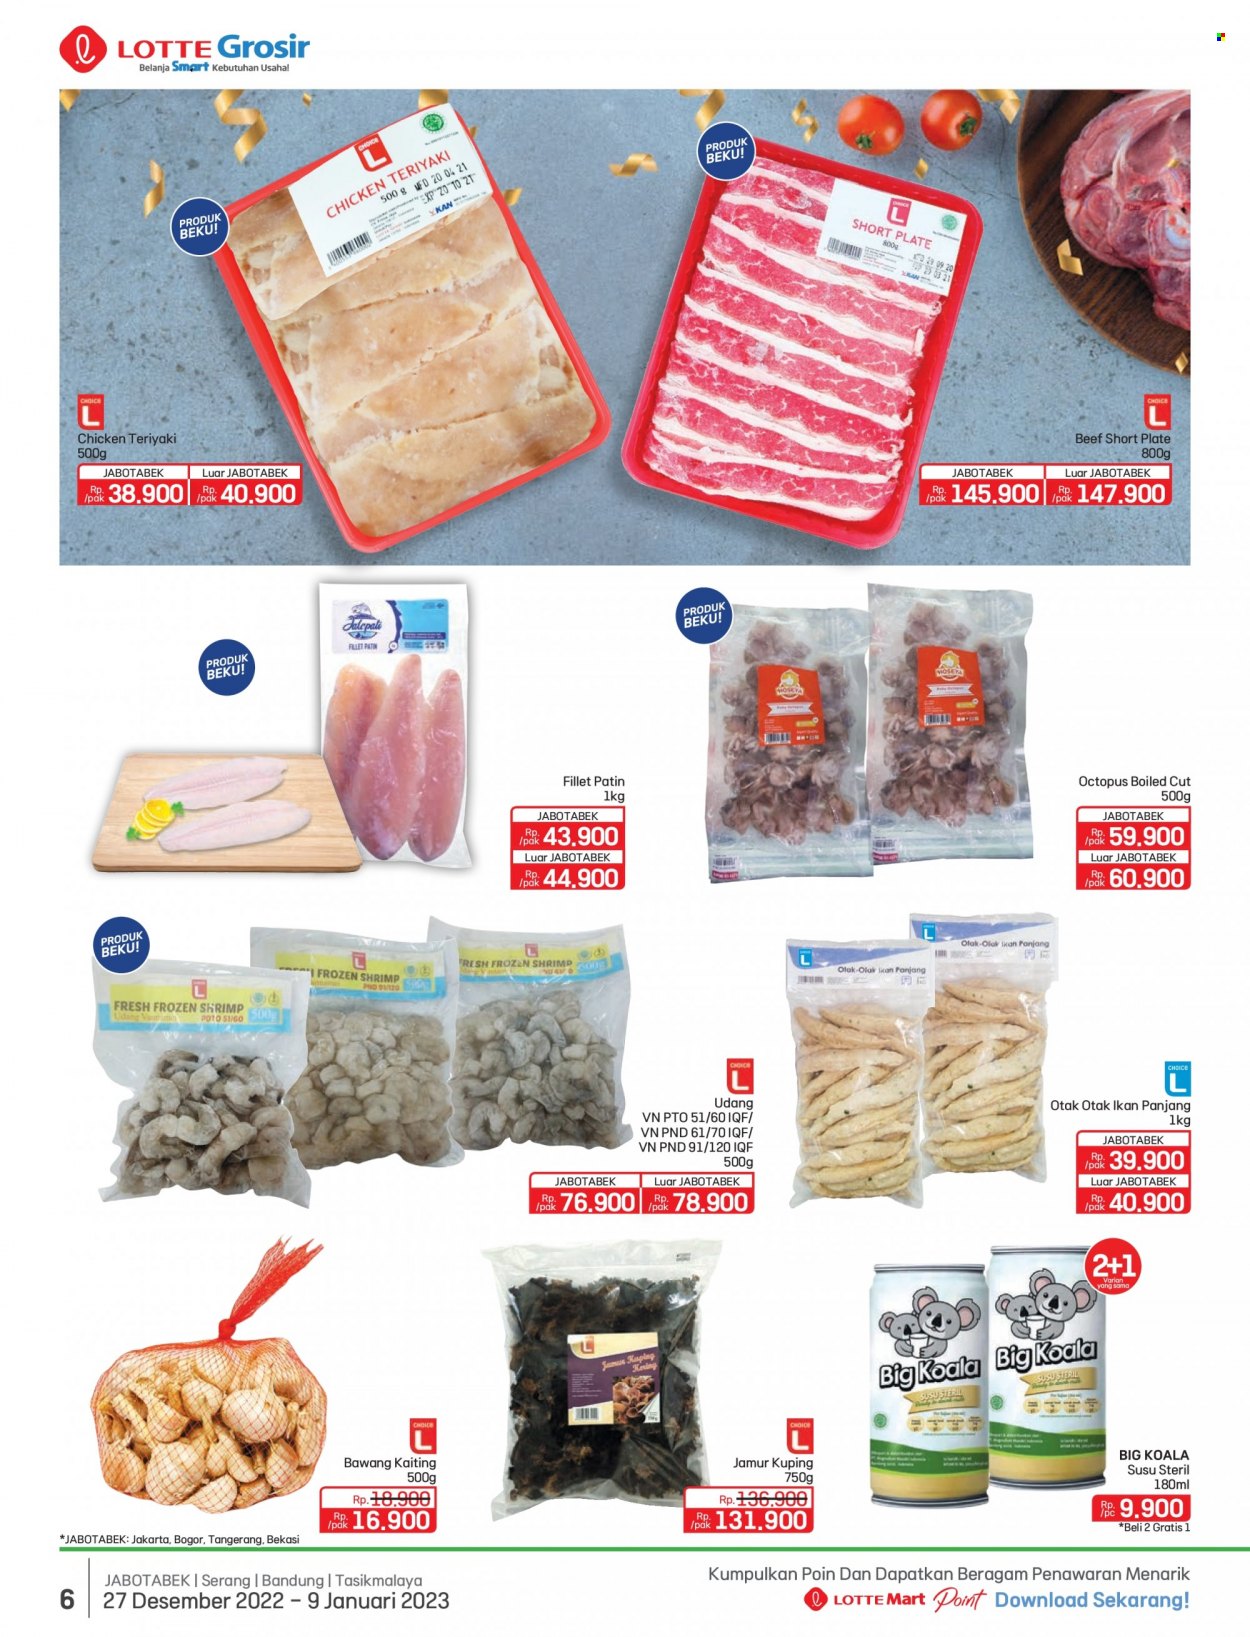 thumbnail - Promo LOTTE Grosir - 01/24/2023 - 02/06/2023 - Produk diskon - chicken, beef, teriyaki, panjang, plate, octopus, frozen, beef meat, bawang. Halaman 6.